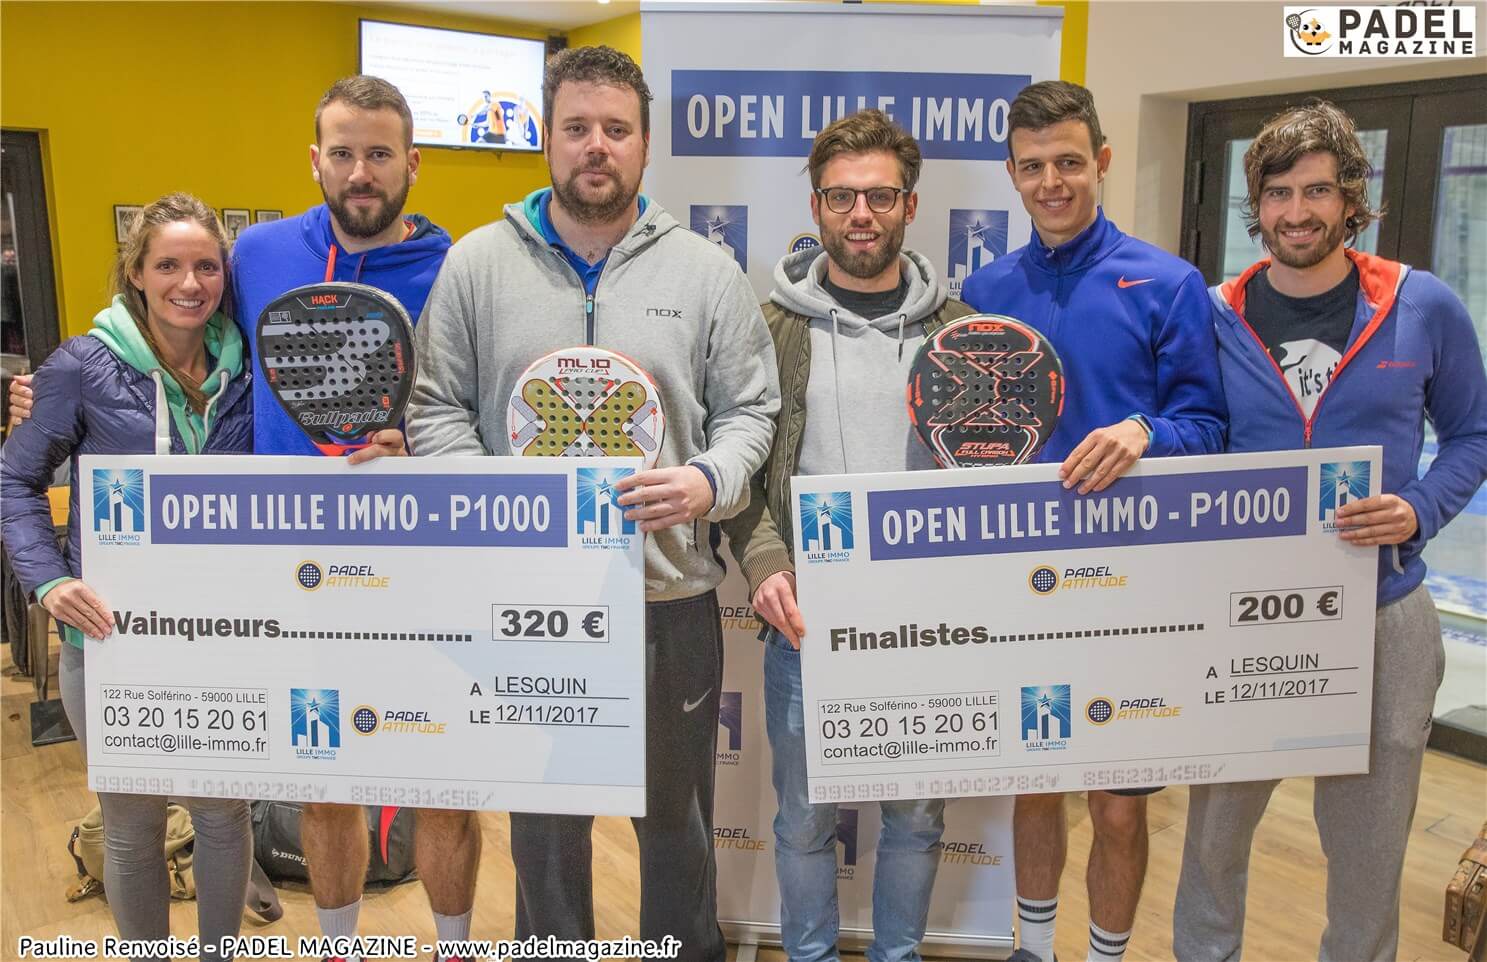 Renvoisé / Romanowski vince il LILLE IMMO Open